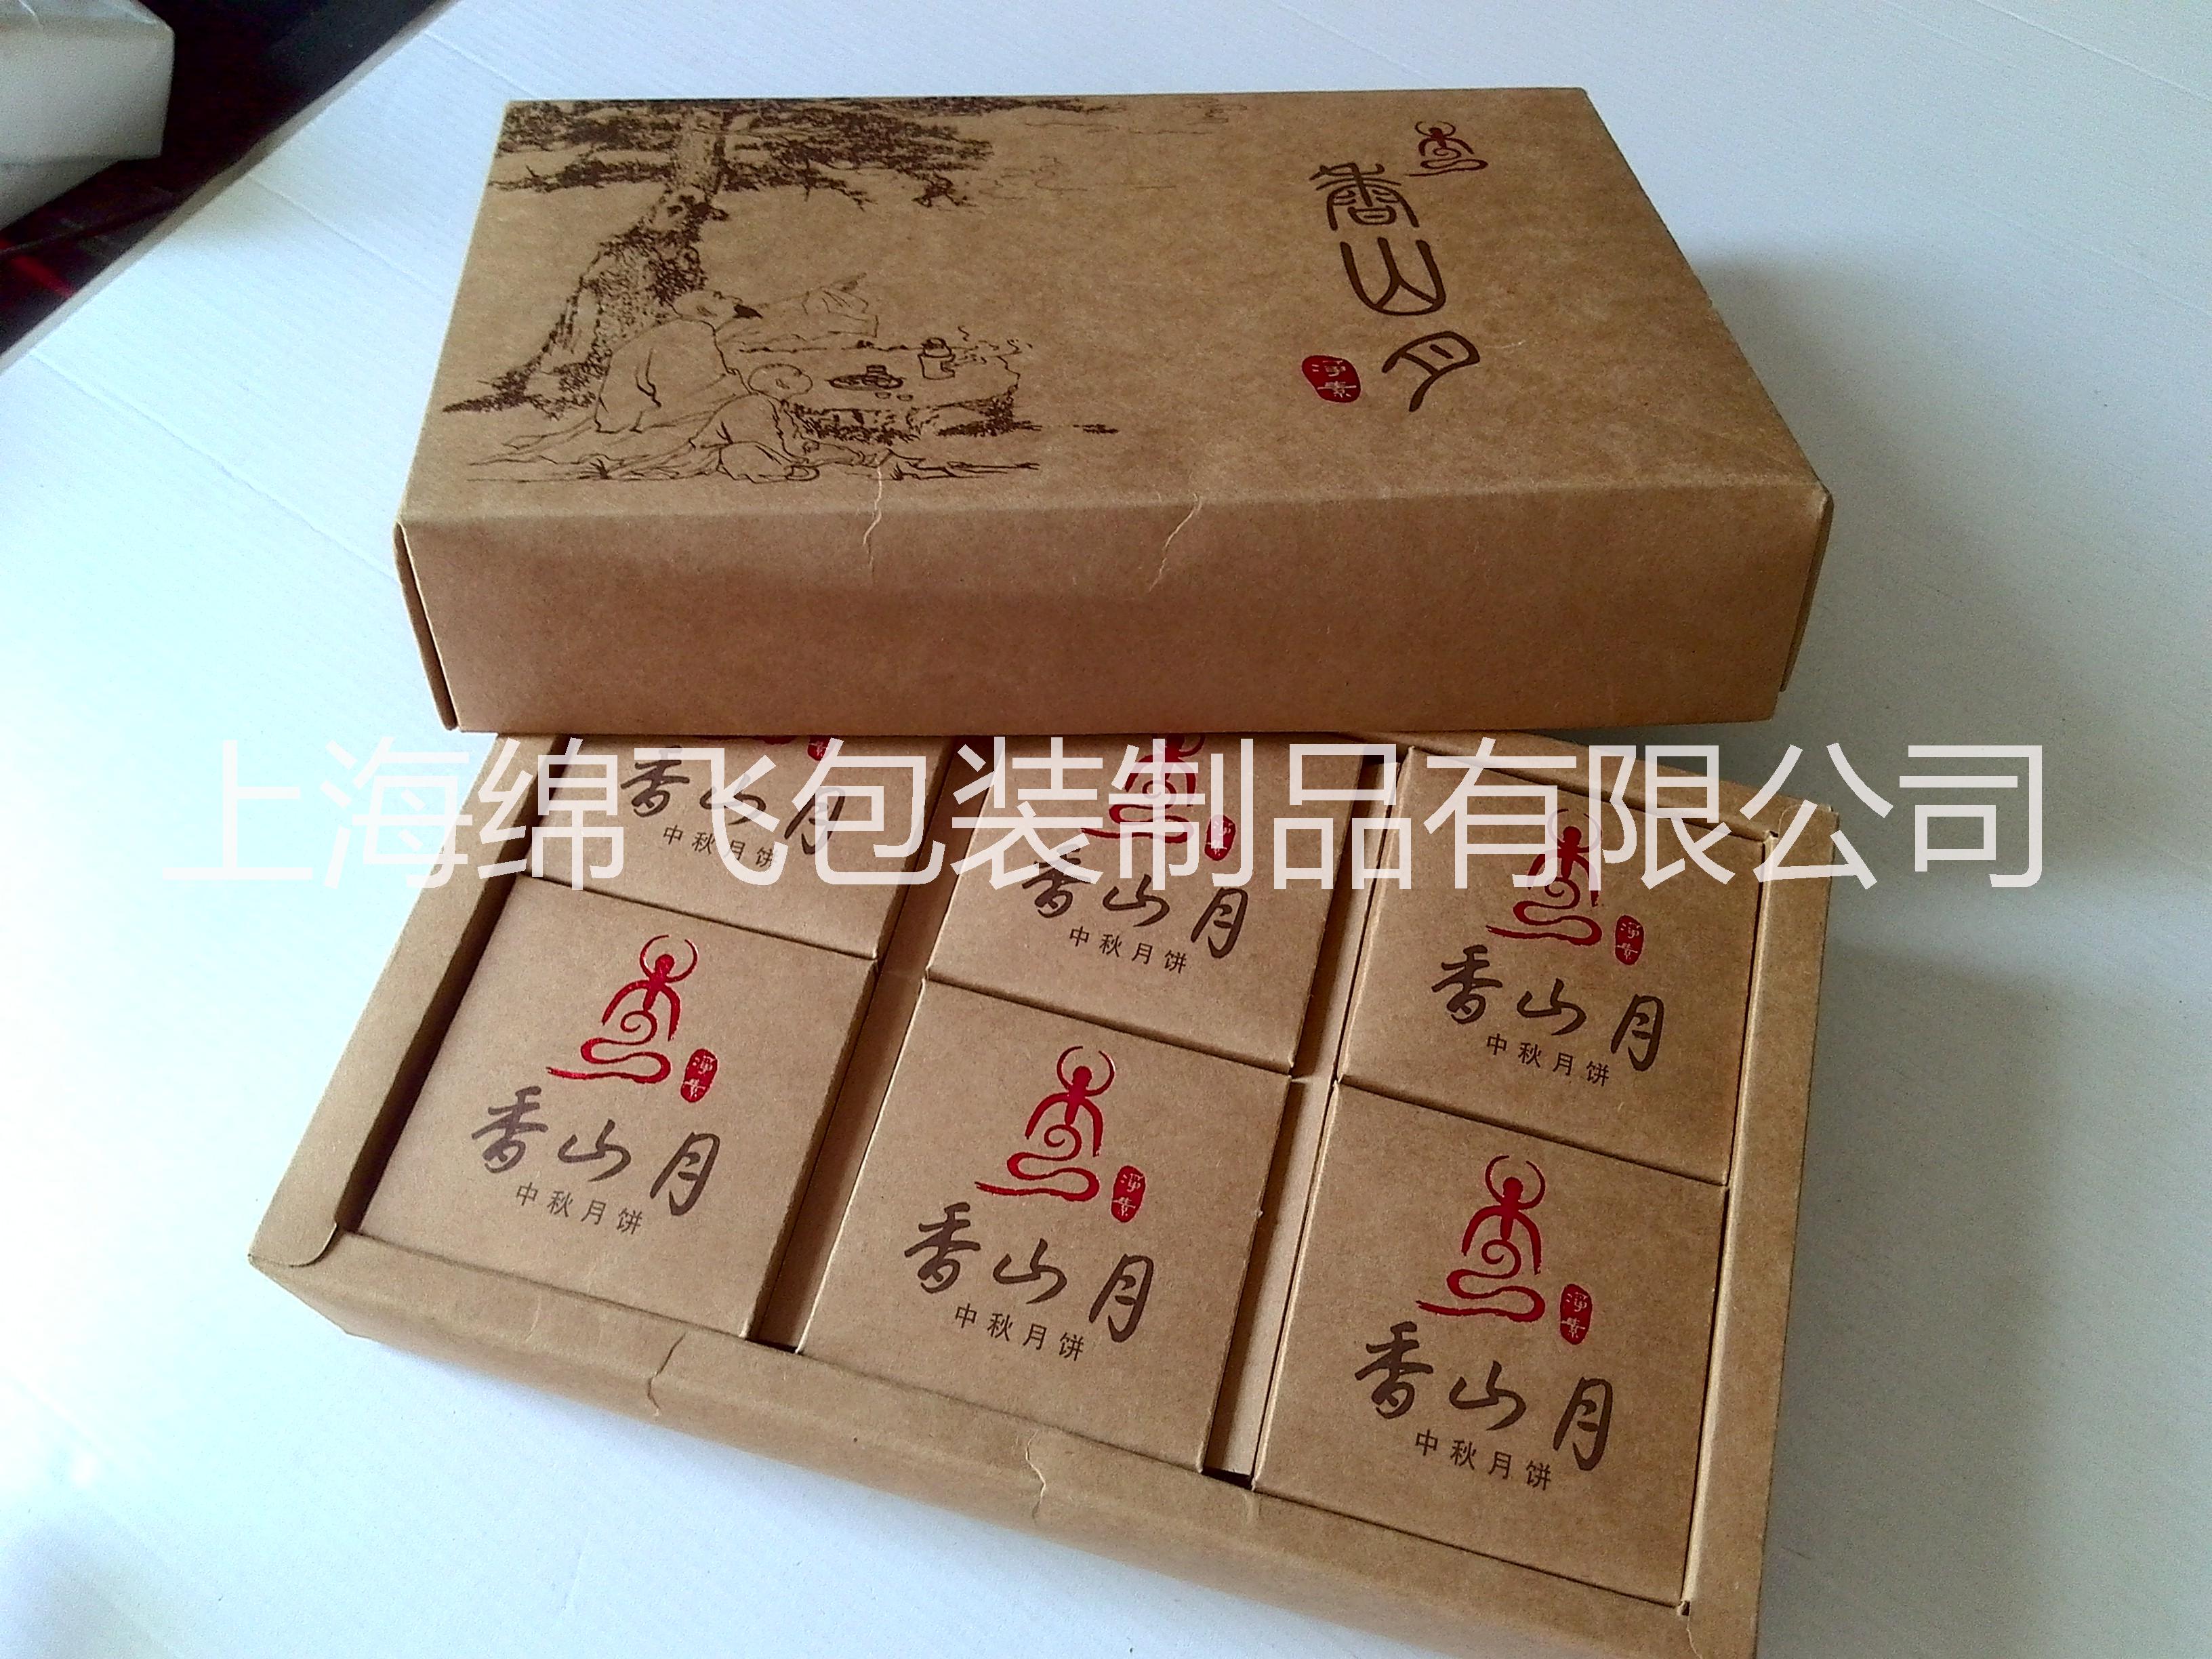 上海市厂家订制糕点包装盒厂家订制食品包装 礼盒包装 服装礼盒 灯泡盒厂家订制月饼包装盒 厂家 厂家订制糕点包装盒